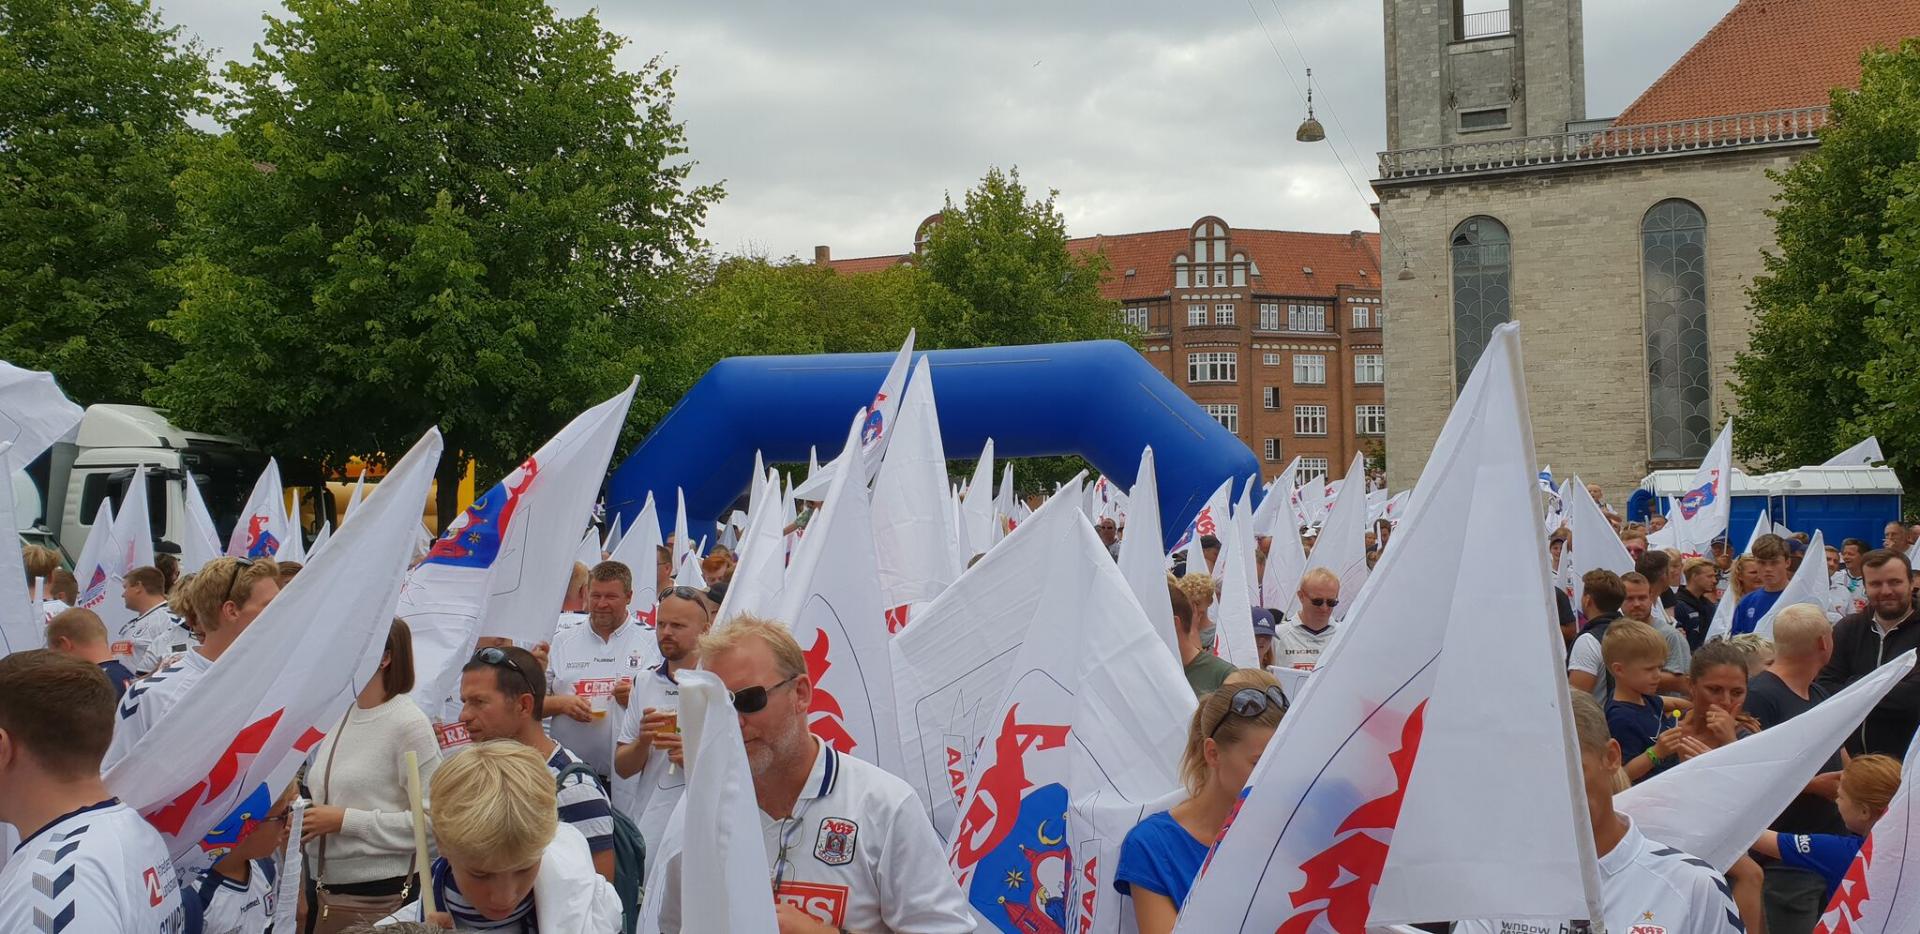 AGF fans i Aarhus (foto: ksdh.dk)